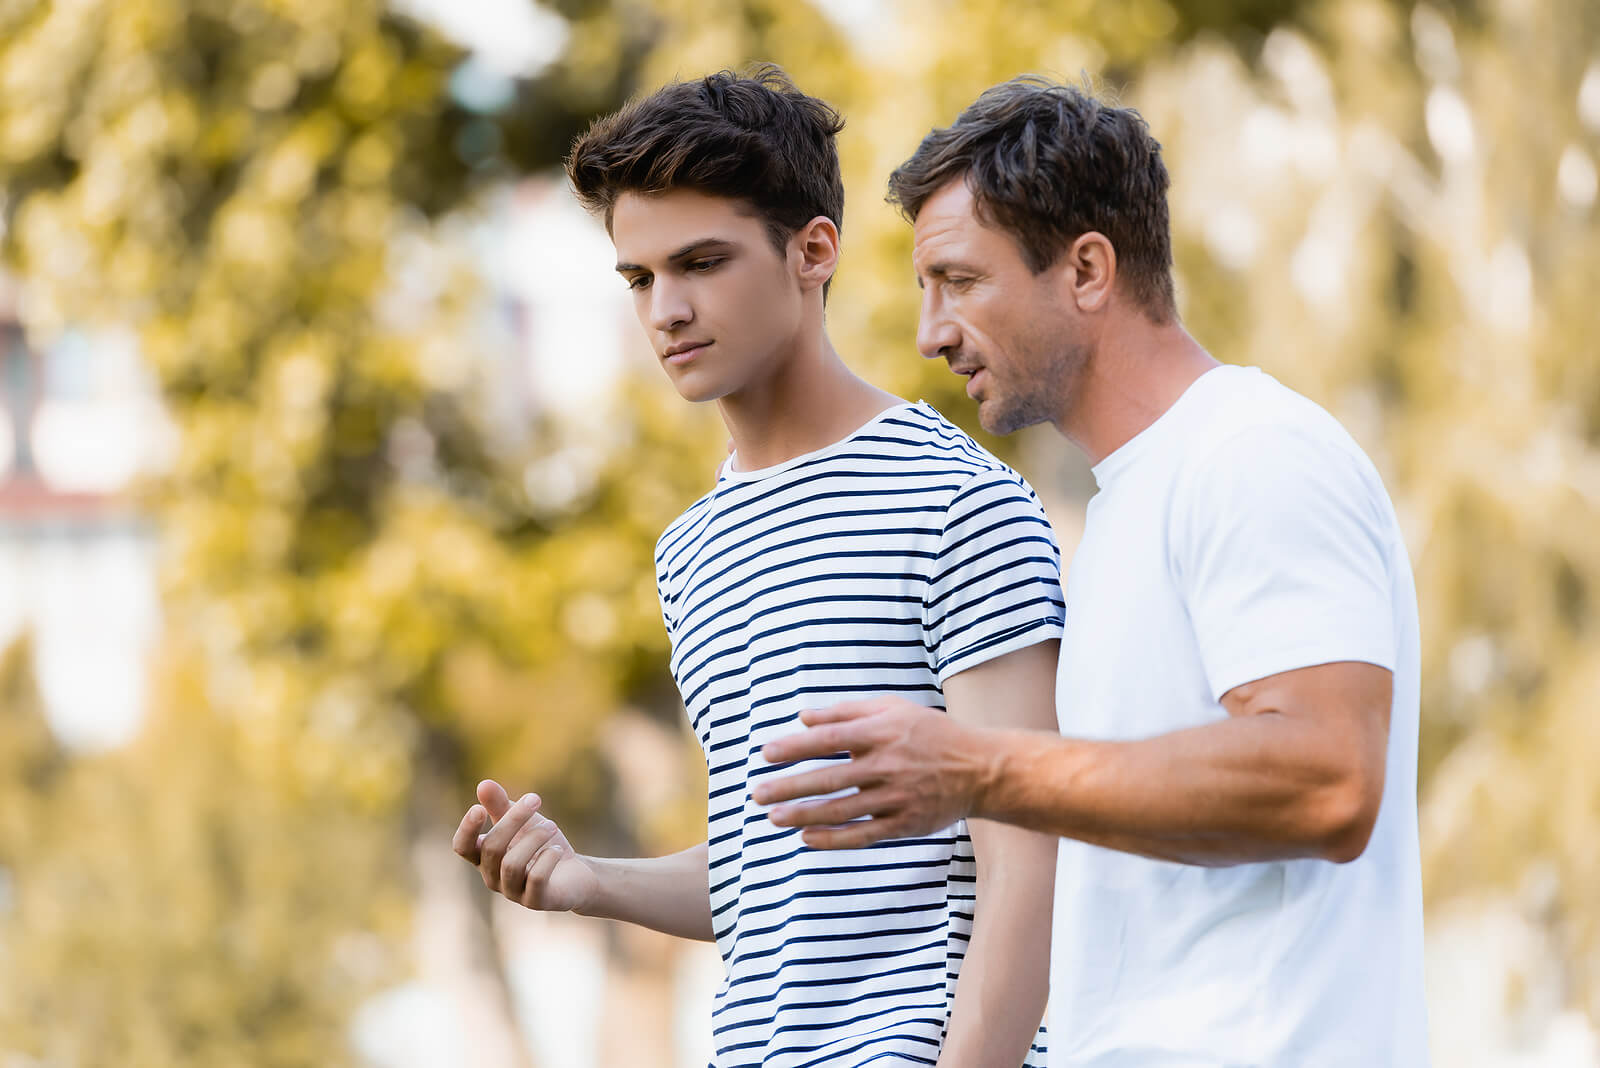 Padre hablando con su hijo para conocerlo mejor.